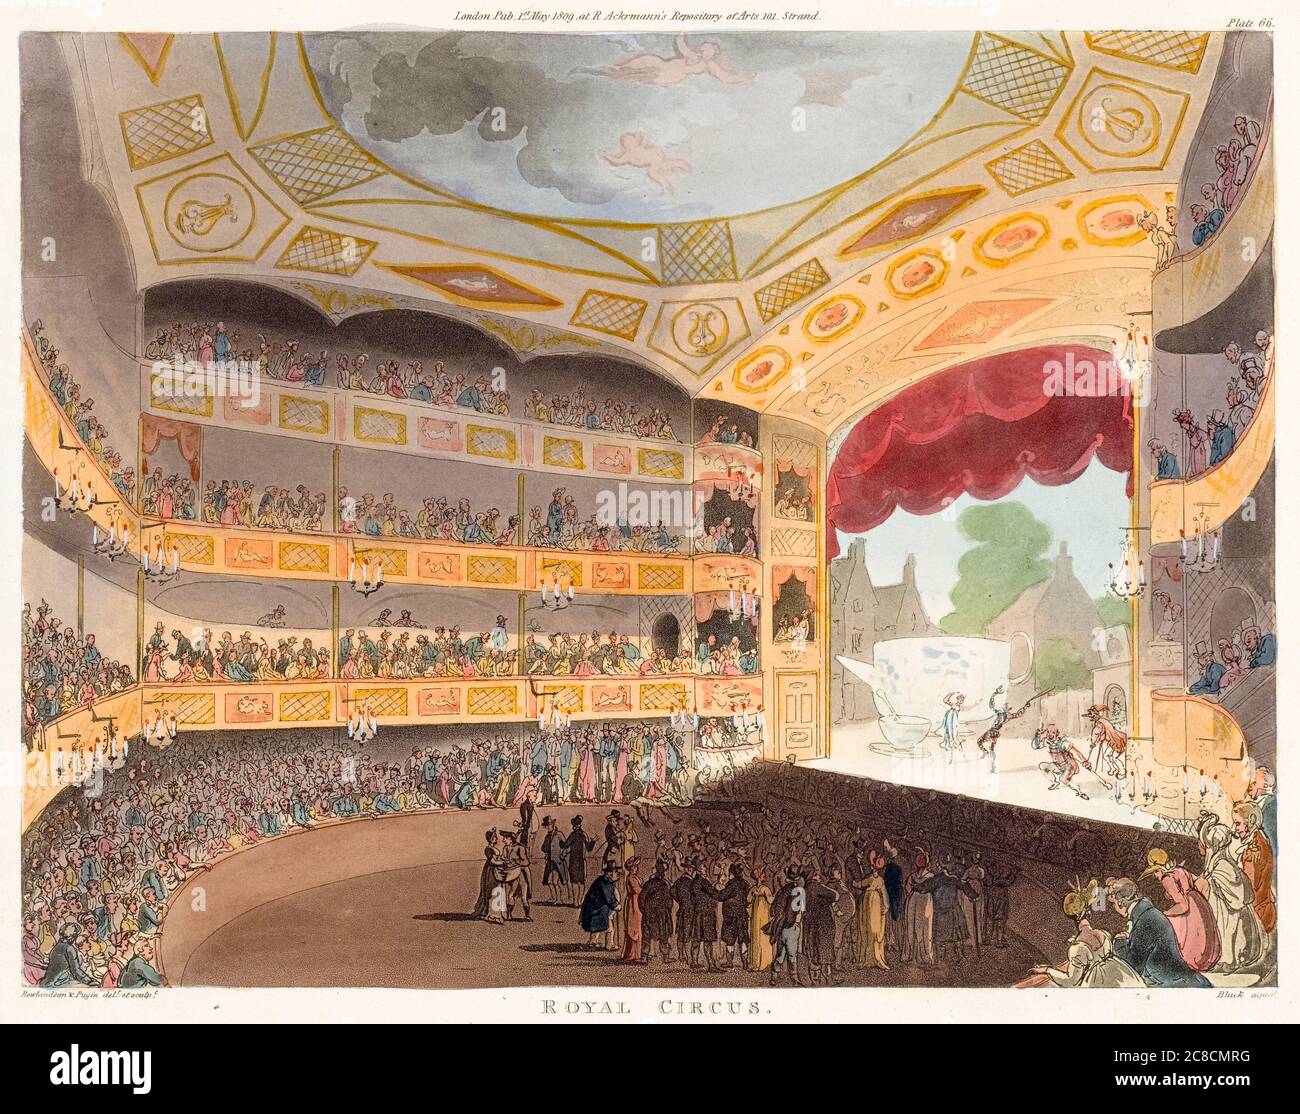 Actuación de Royal Circus en Londres, Inglaterra, 1809 grabado por Thomas Rowlandson, Auguste Charles Pugin, John Bluck Foto de stock